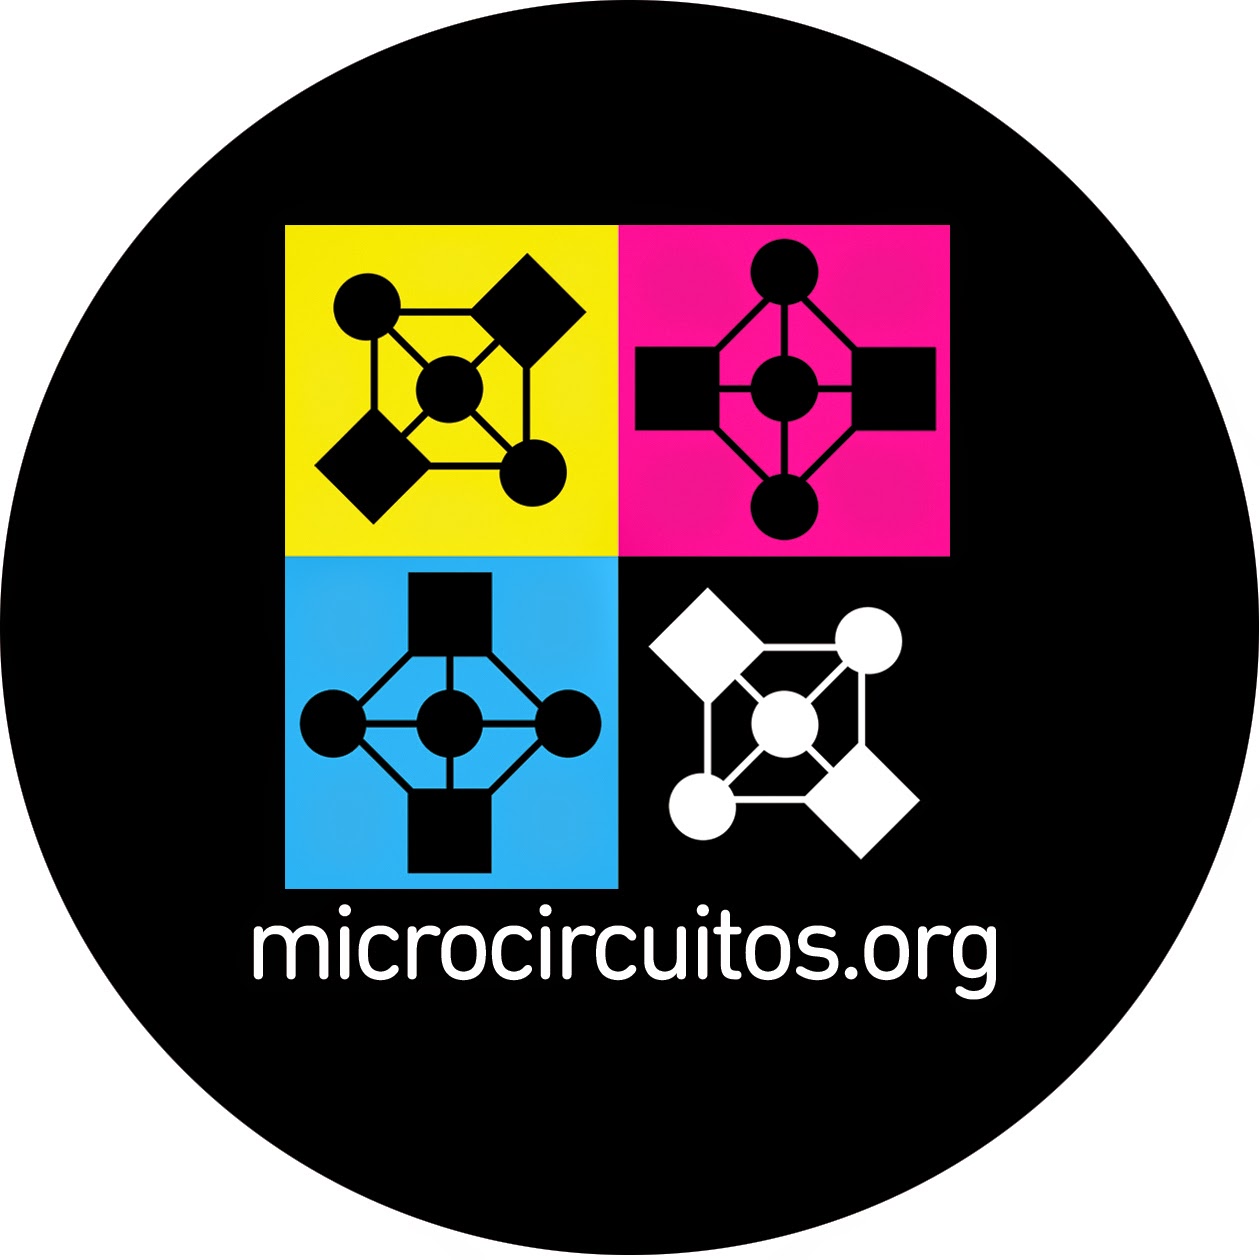 microcircuitos.org